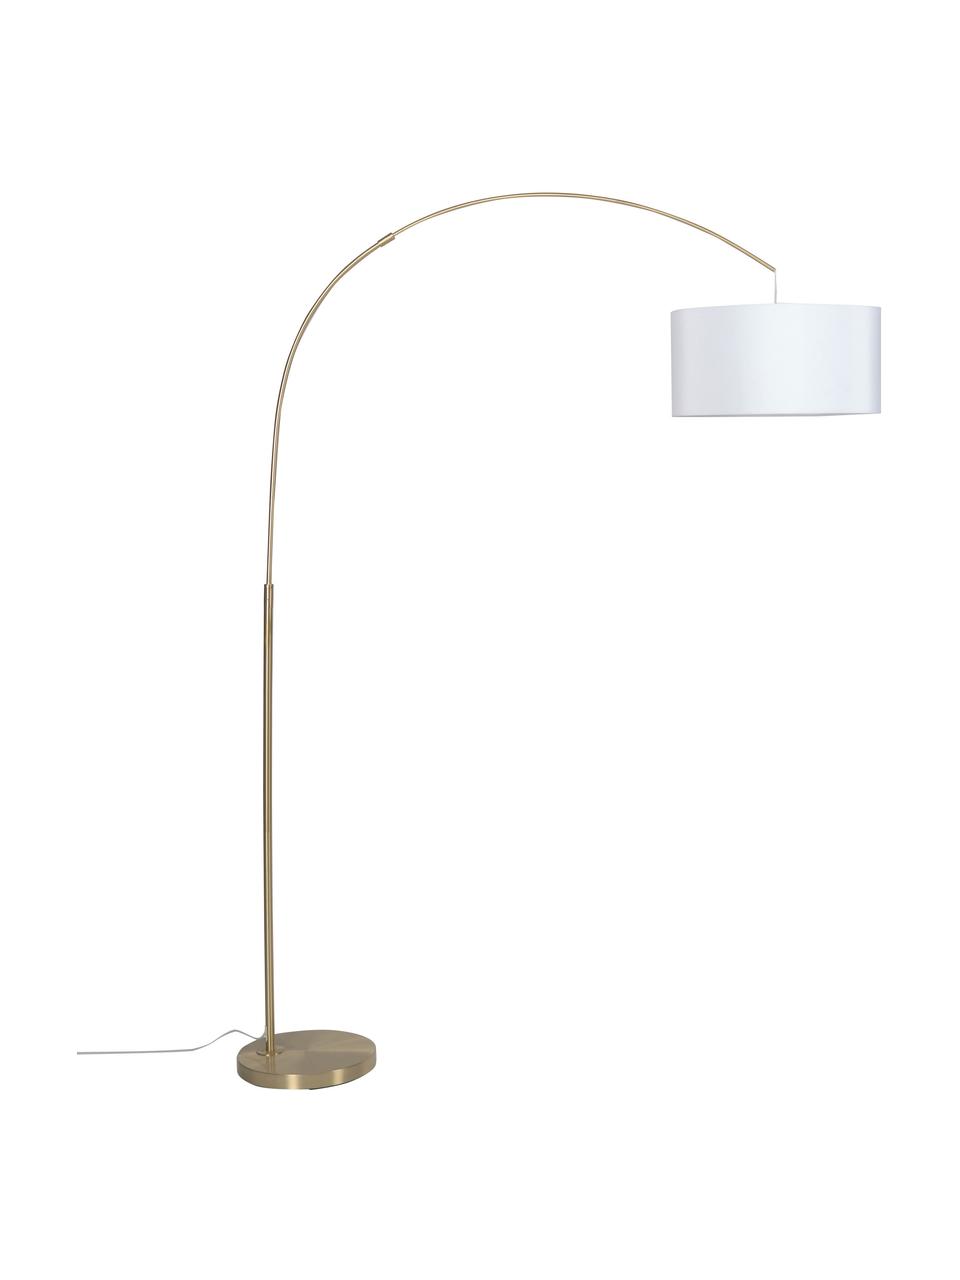 Grand lampadaire arc moderne Niels, Abat-jour : blanc Pied de lampe : couleur laiton Câble : transparent